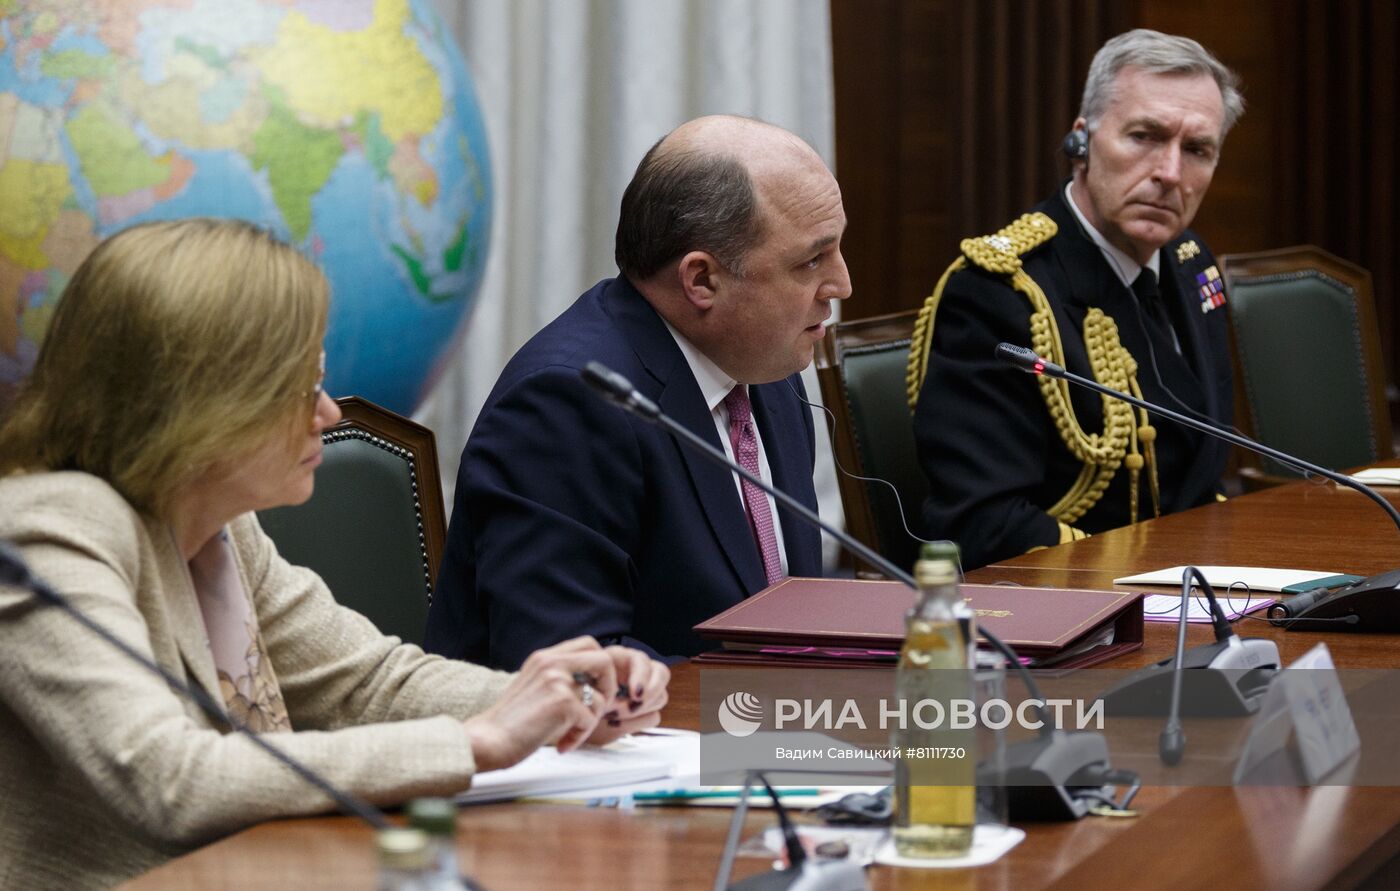 Встреча министров обороны России и Великобритании С. Шойгу и Б. Уоллеса